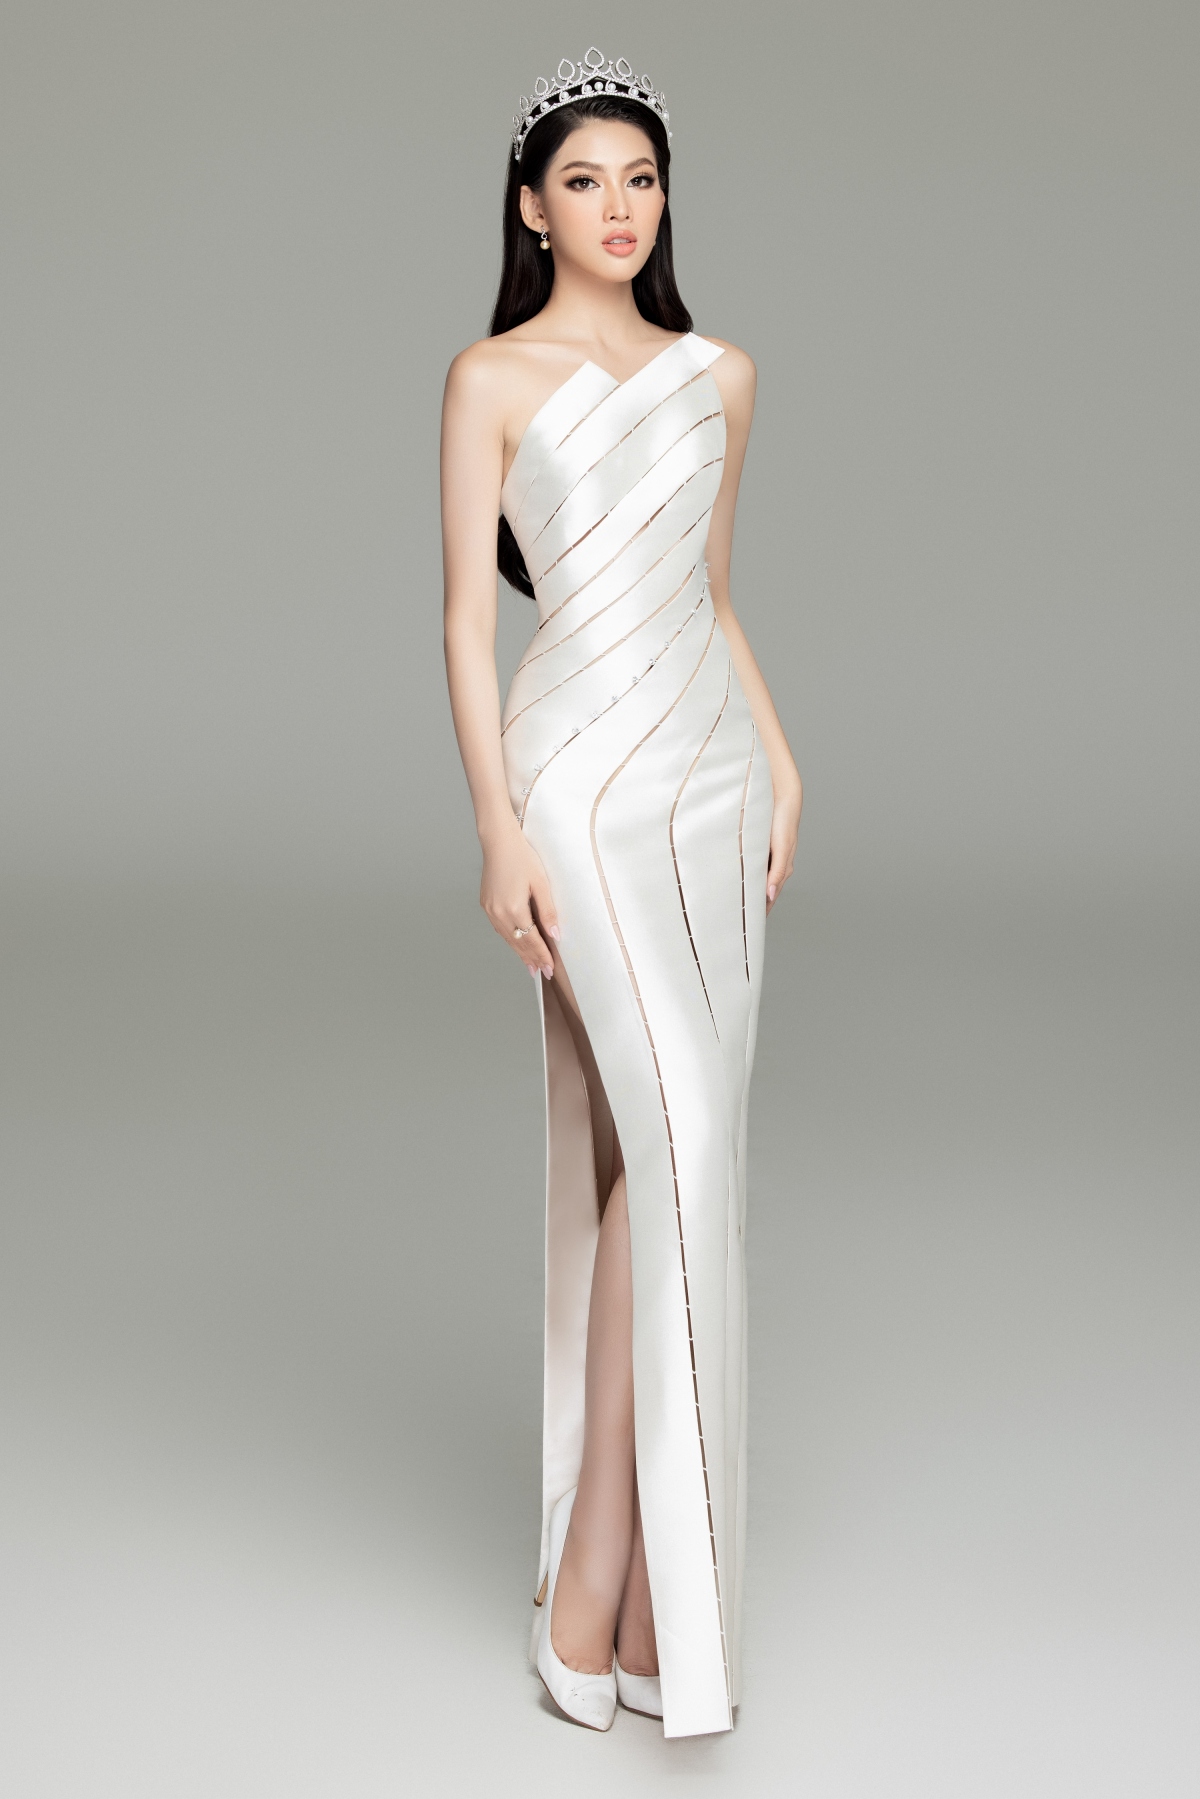 đầm váy dạ hội ngắn cao cấp màu xám trắng DH 068